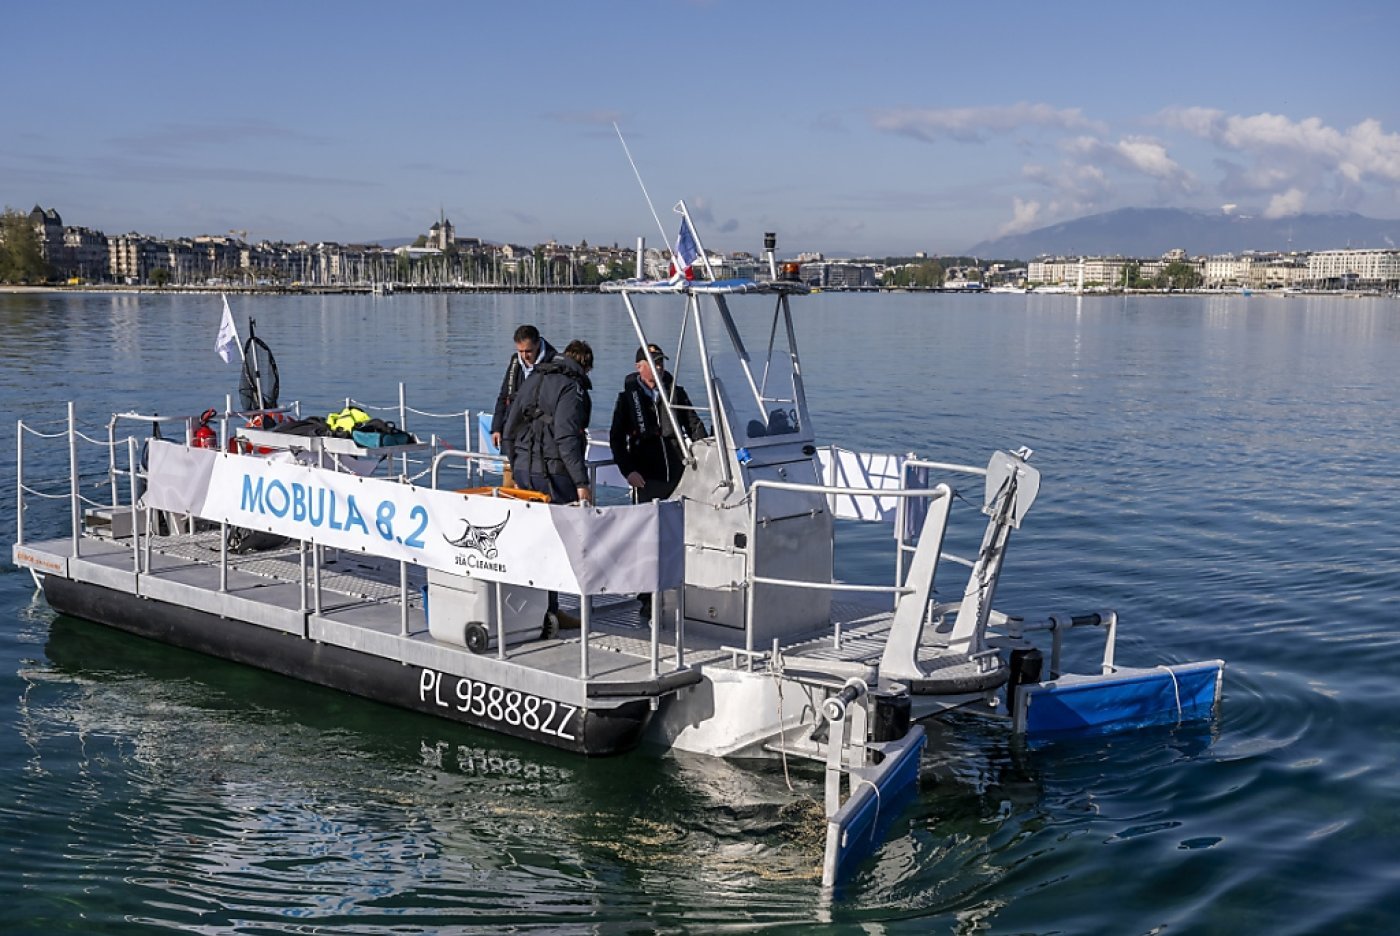 L'association SeaCleaners a présenté son nouveau bateau Mobula 8.2 dans la rade genevoise. KEYSTONE